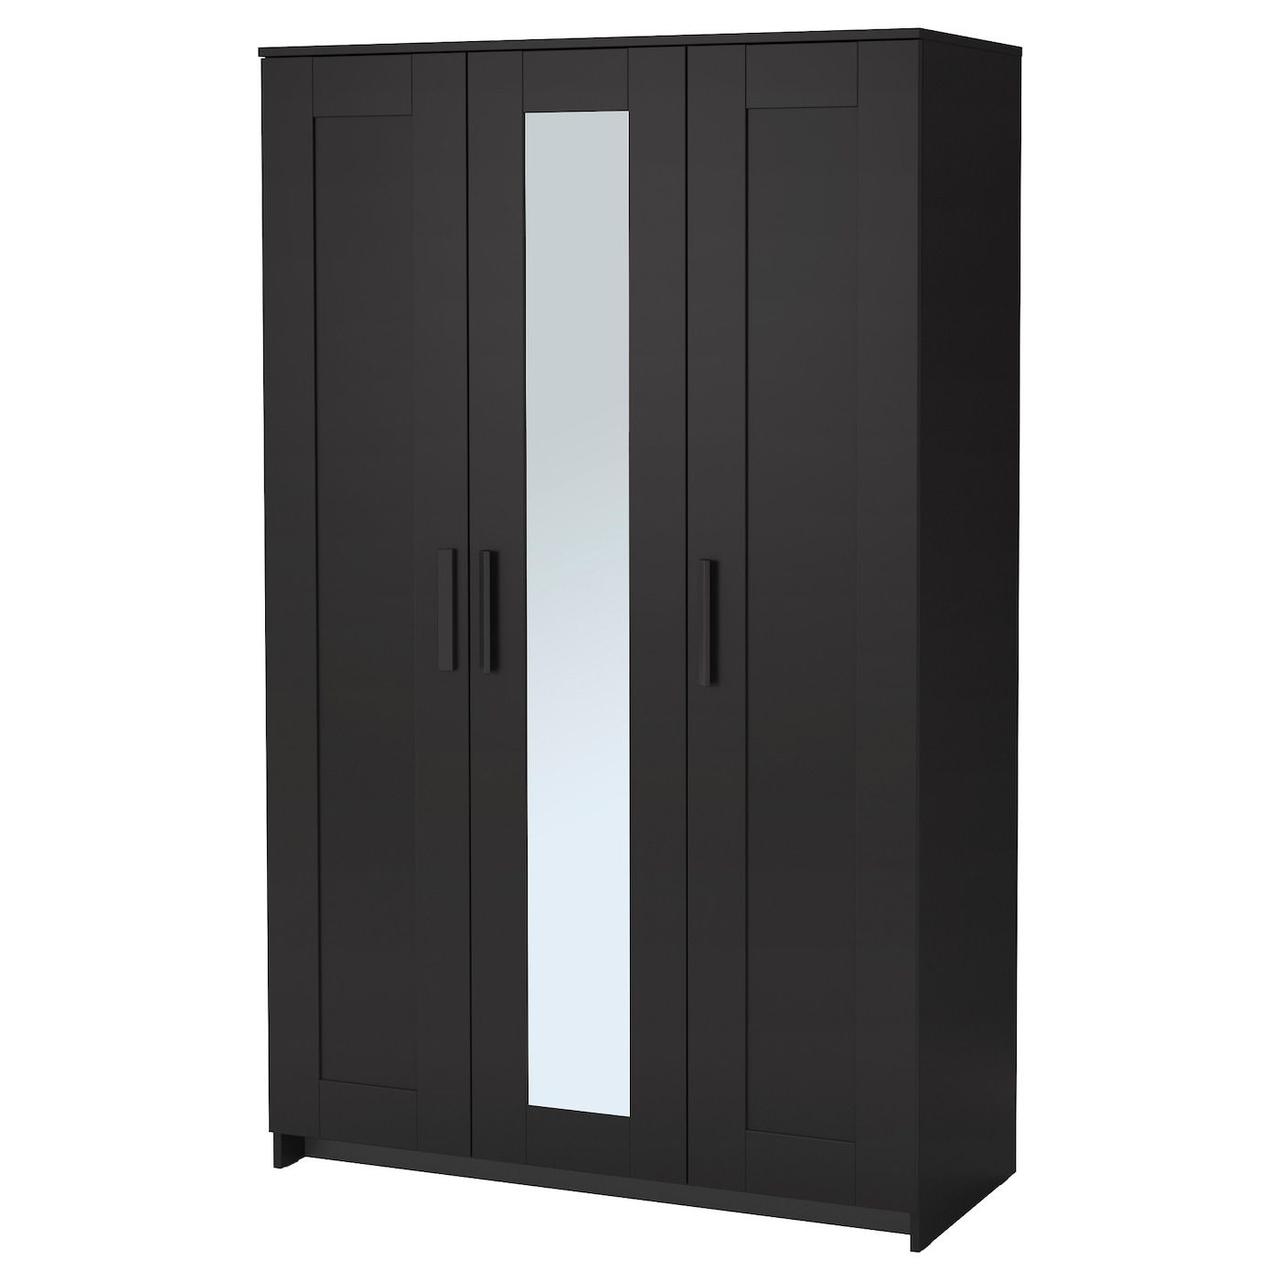 Шкаф БРИМНЭС платяной 3-дверный, чёрный, 117x190 см